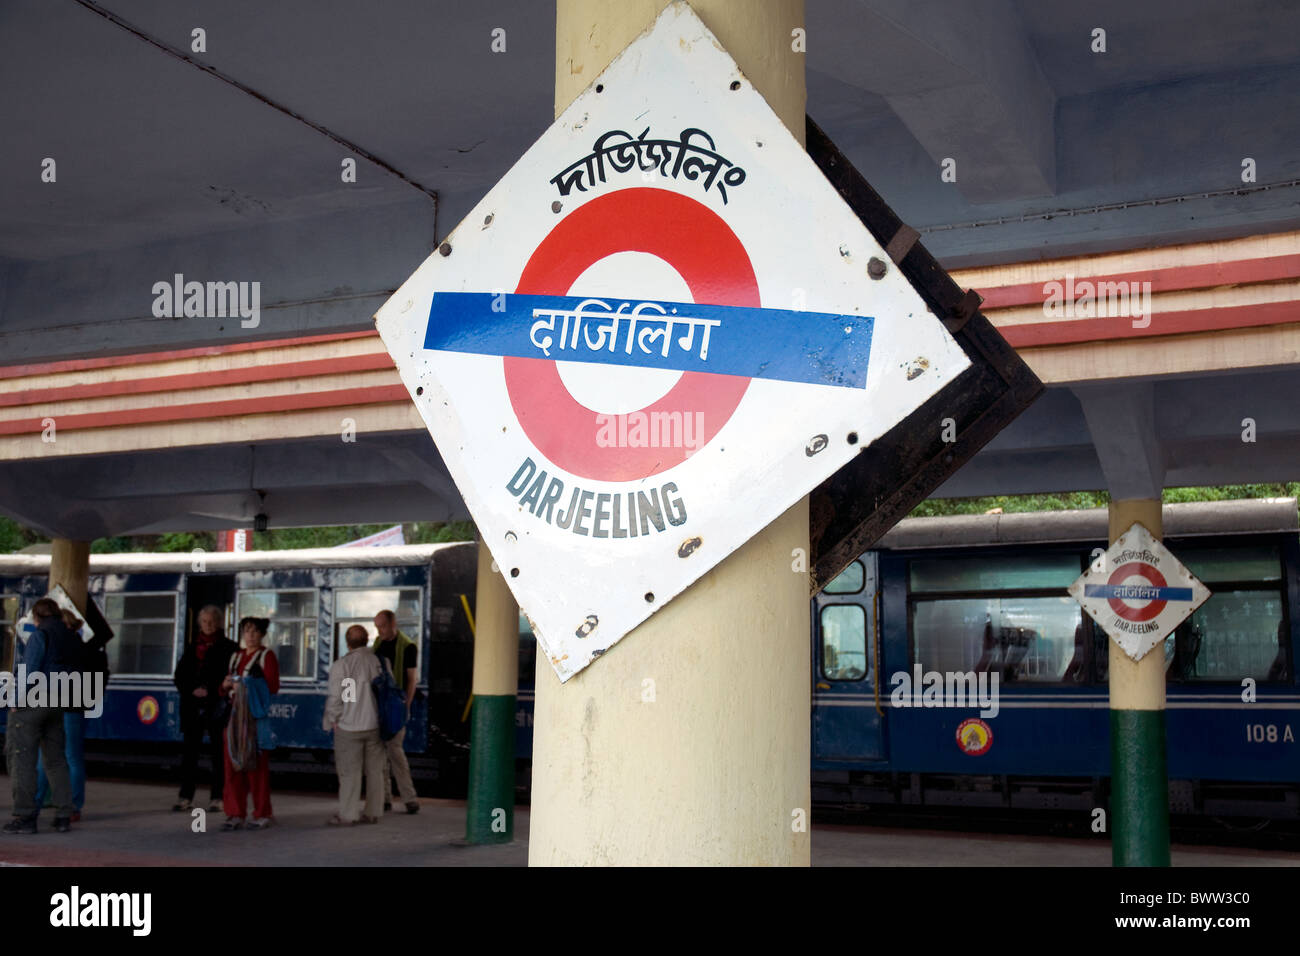 Estación de Ferrocarril Darjeeling, famosa por los trenes históricos proporcionando el transporte ferroviario en el alto Himalaya Foto de stock